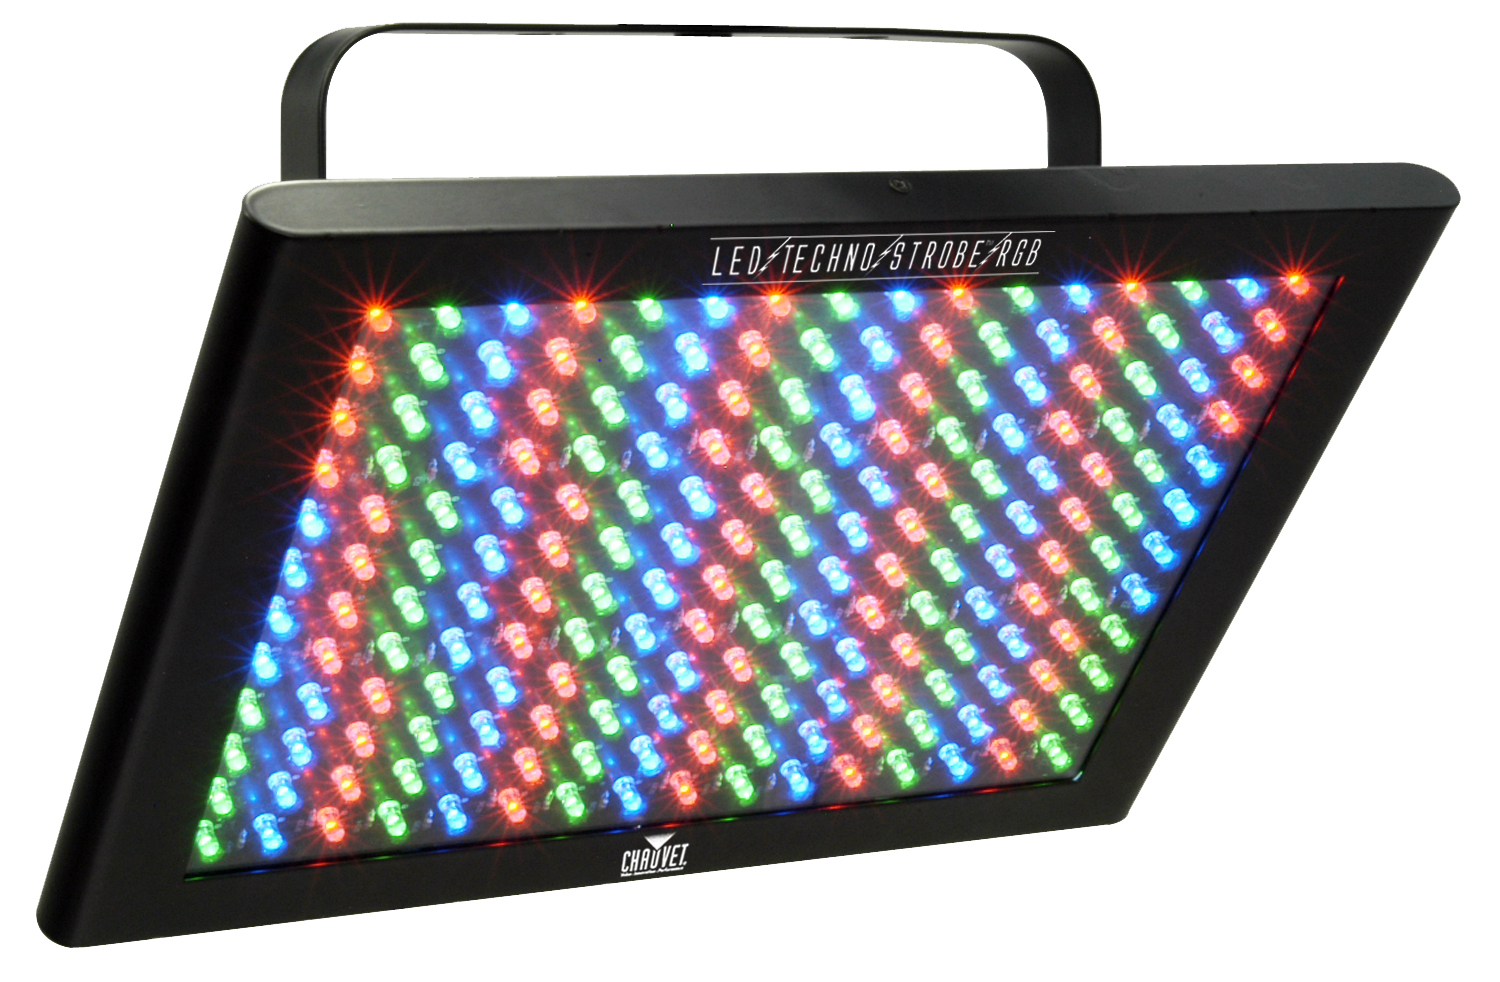 Chauvet Chauvet Techno Strobe ST-4000RGB LED RGB Light